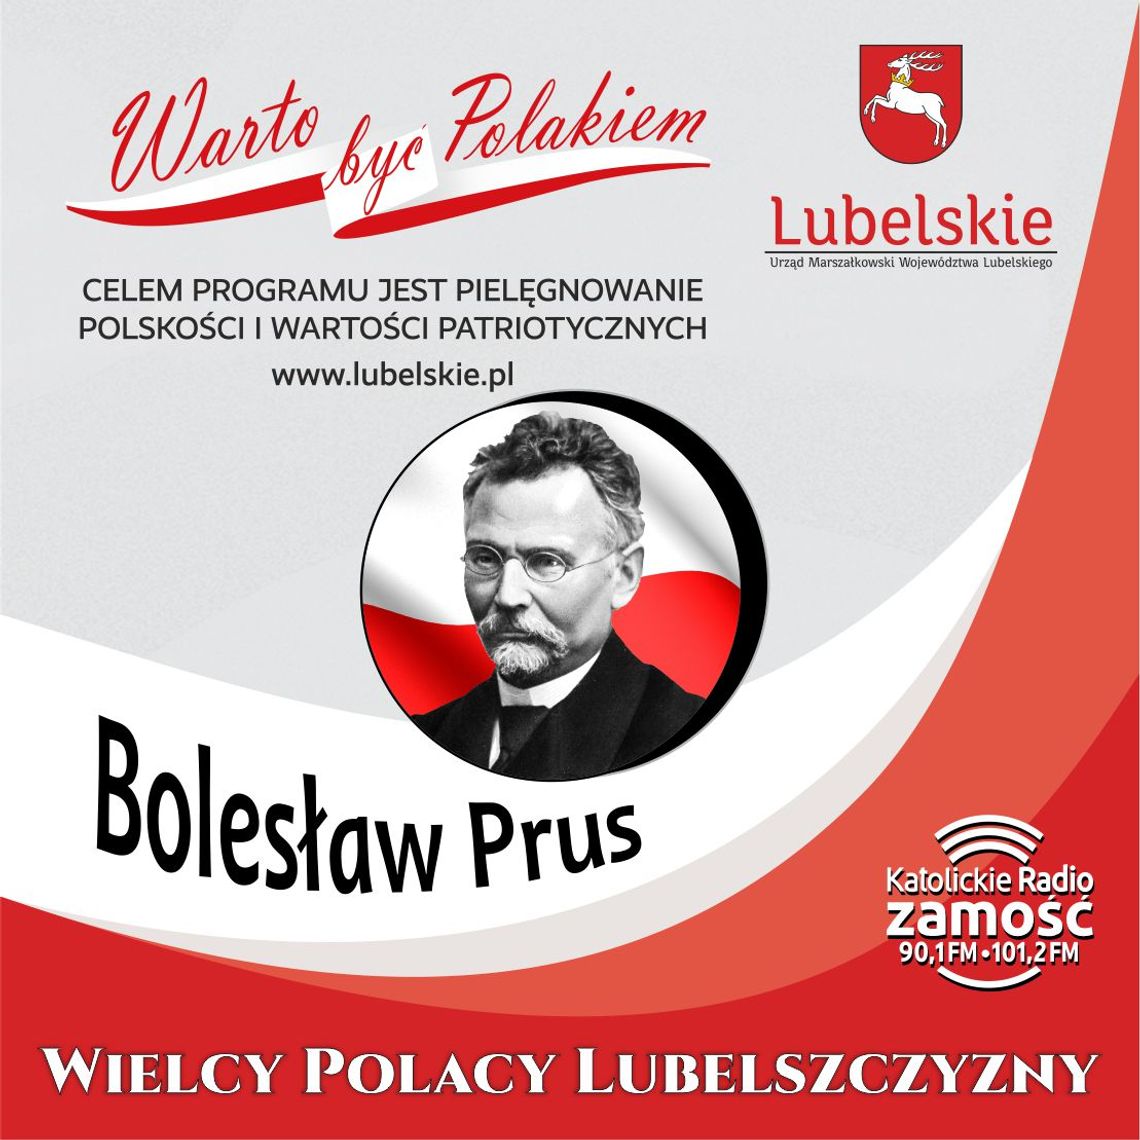 Wielcy Polacy Lubelszczyzny - Bolesław Prus